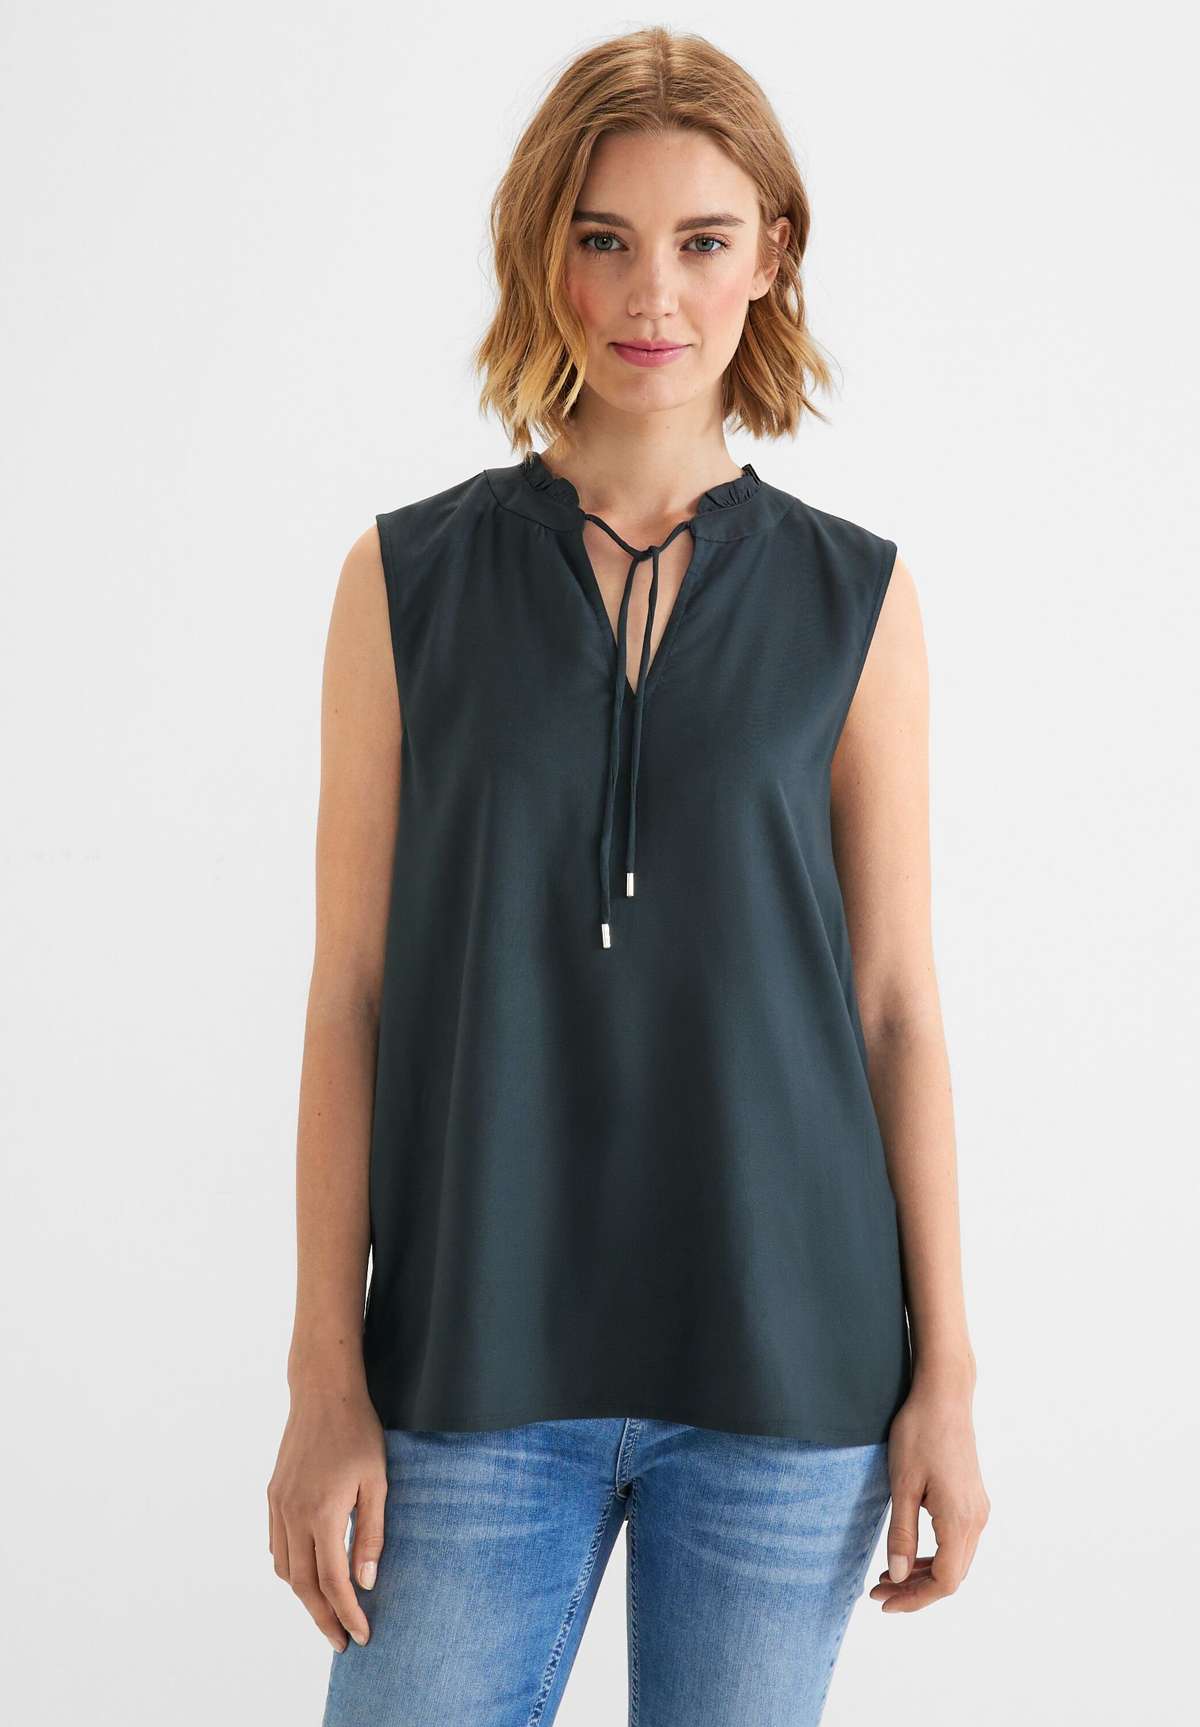 Блуза-топ-блузка с рюшами цвета Cool Vintage Green (1 шт.) Не в наличии